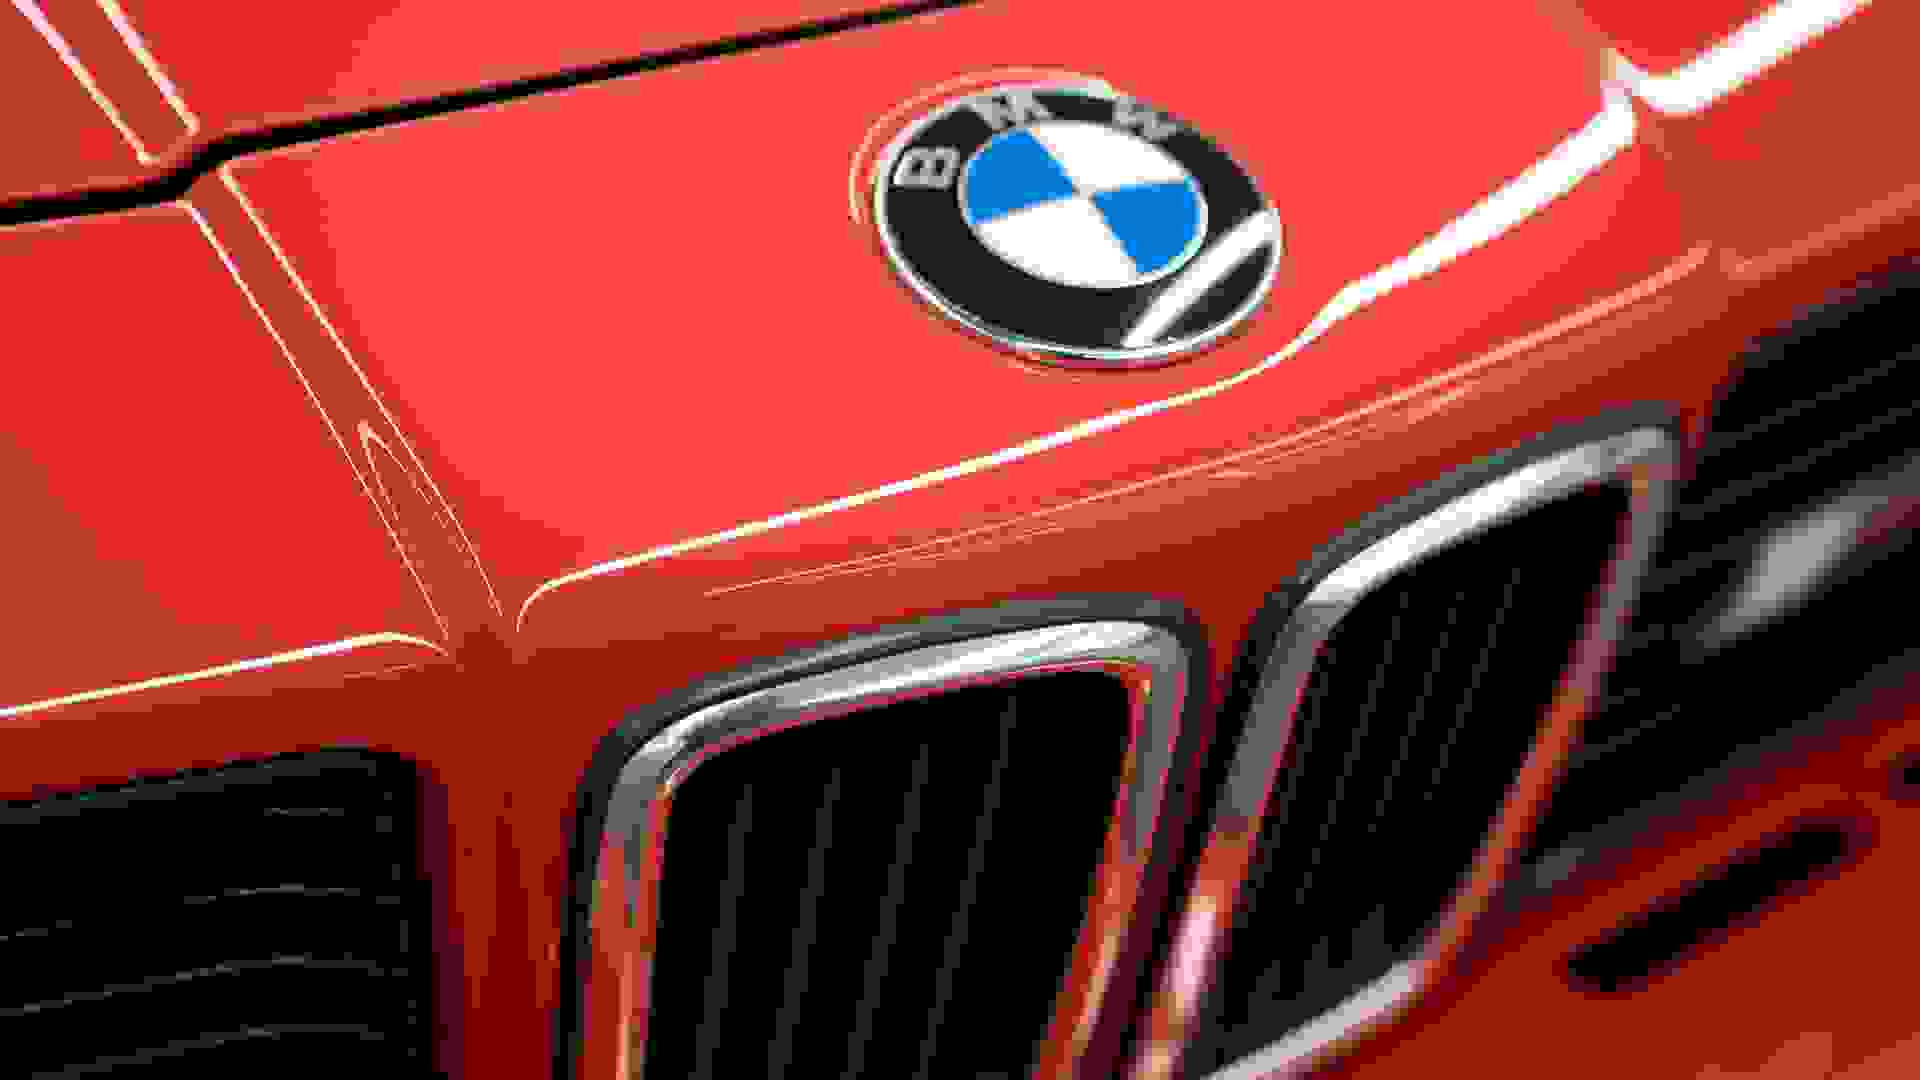 BMW 635 CSi Photo 7c4d5ad5-2ef1-449c-8008-6630021b3616.jpg